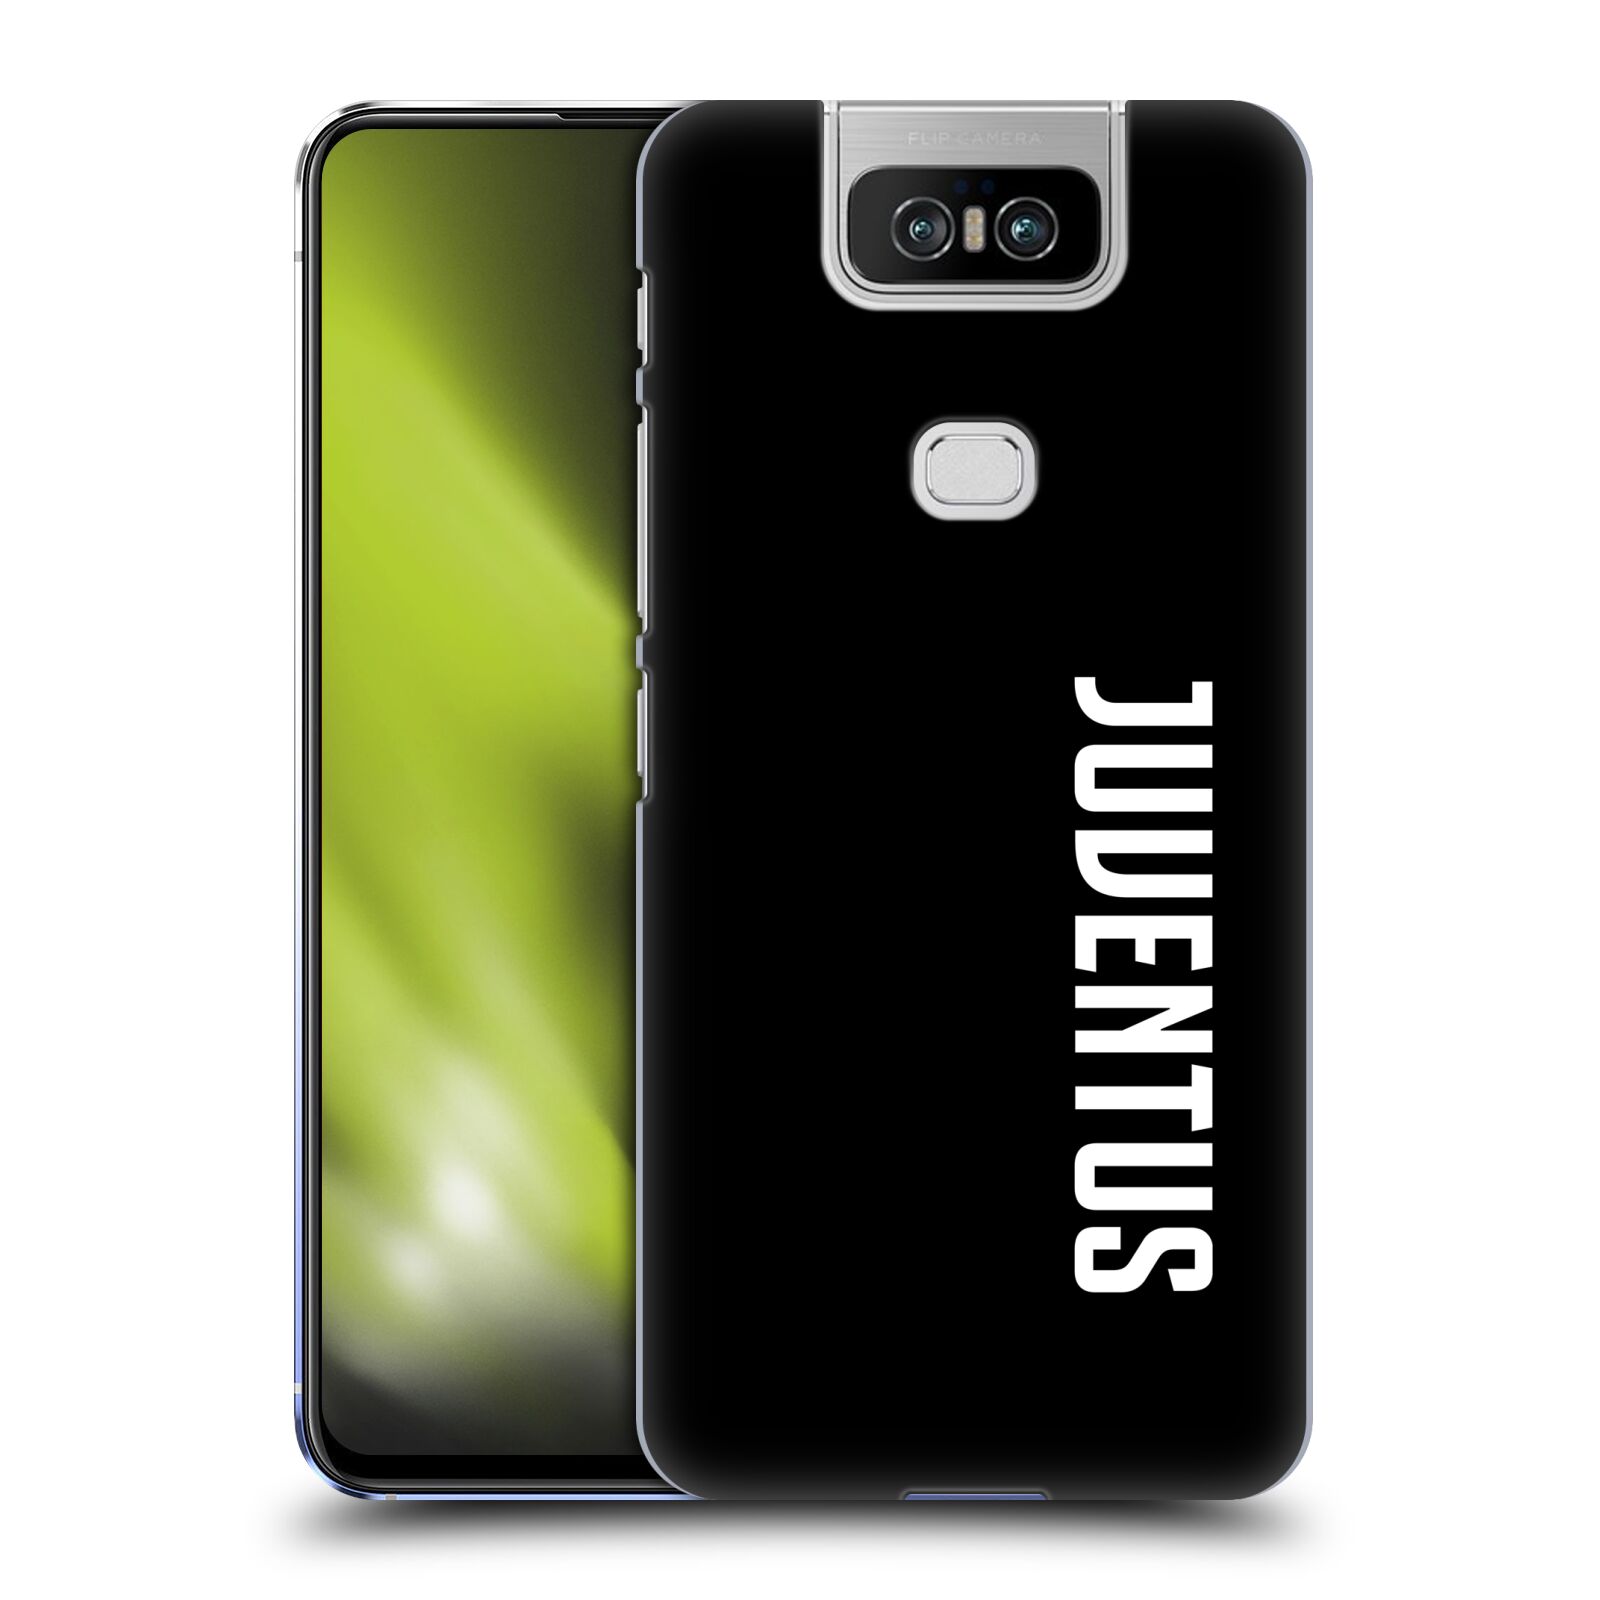 Pouzdro na mobil Asus Zenfone 6 ZS630KL - HEAD CASE - Fotbalový klub Juventus FC černé pozadí velký bílý nápis